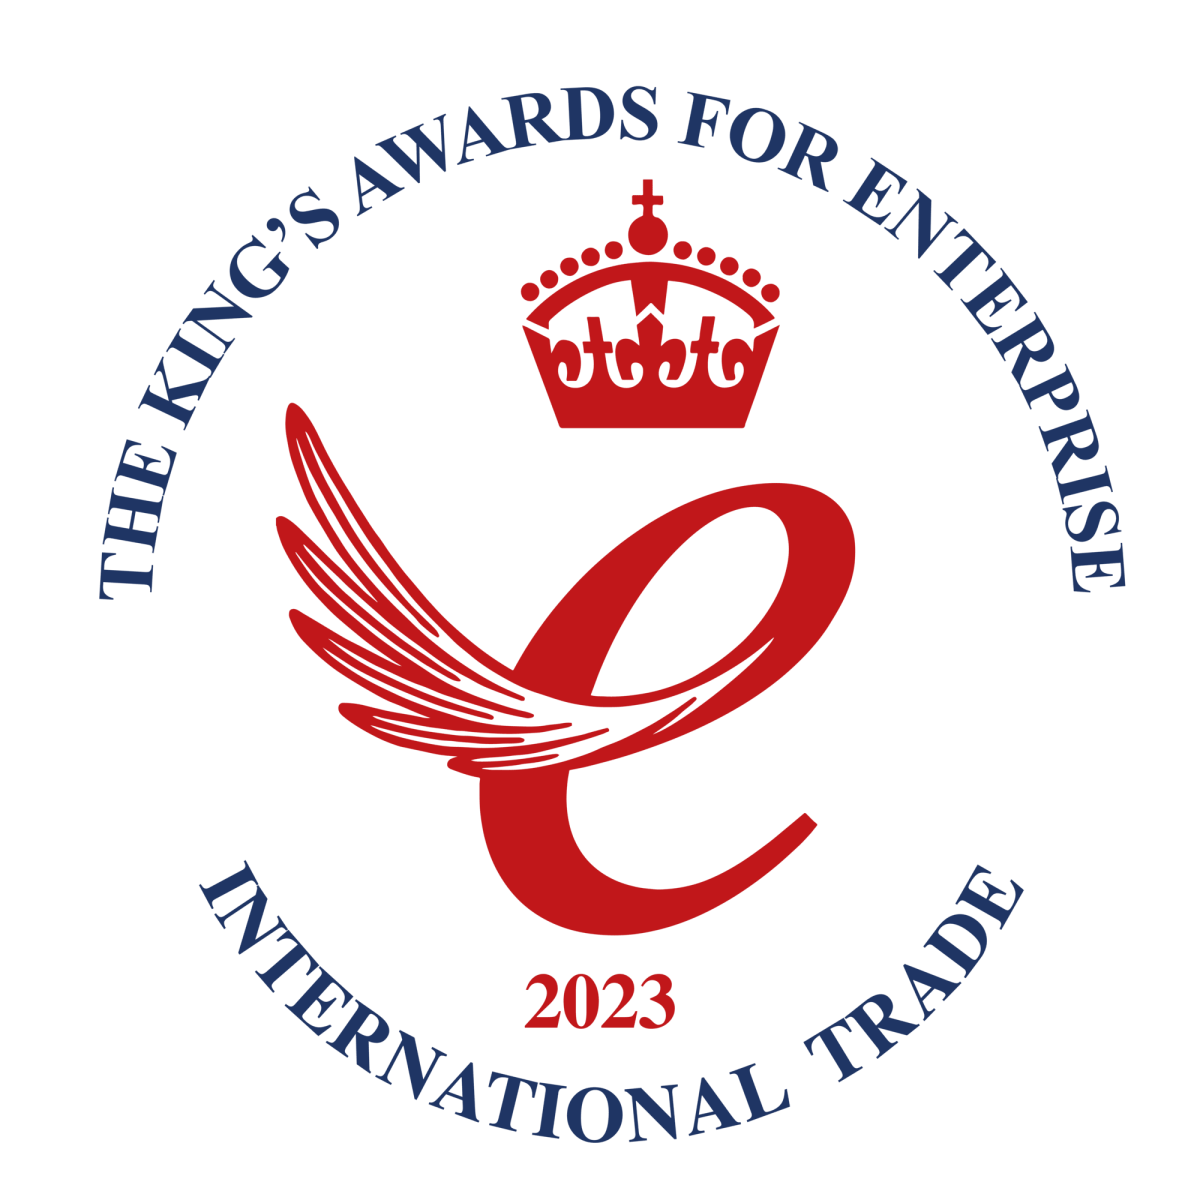 Kings Award for Enterprise: International Trade 2023 logo